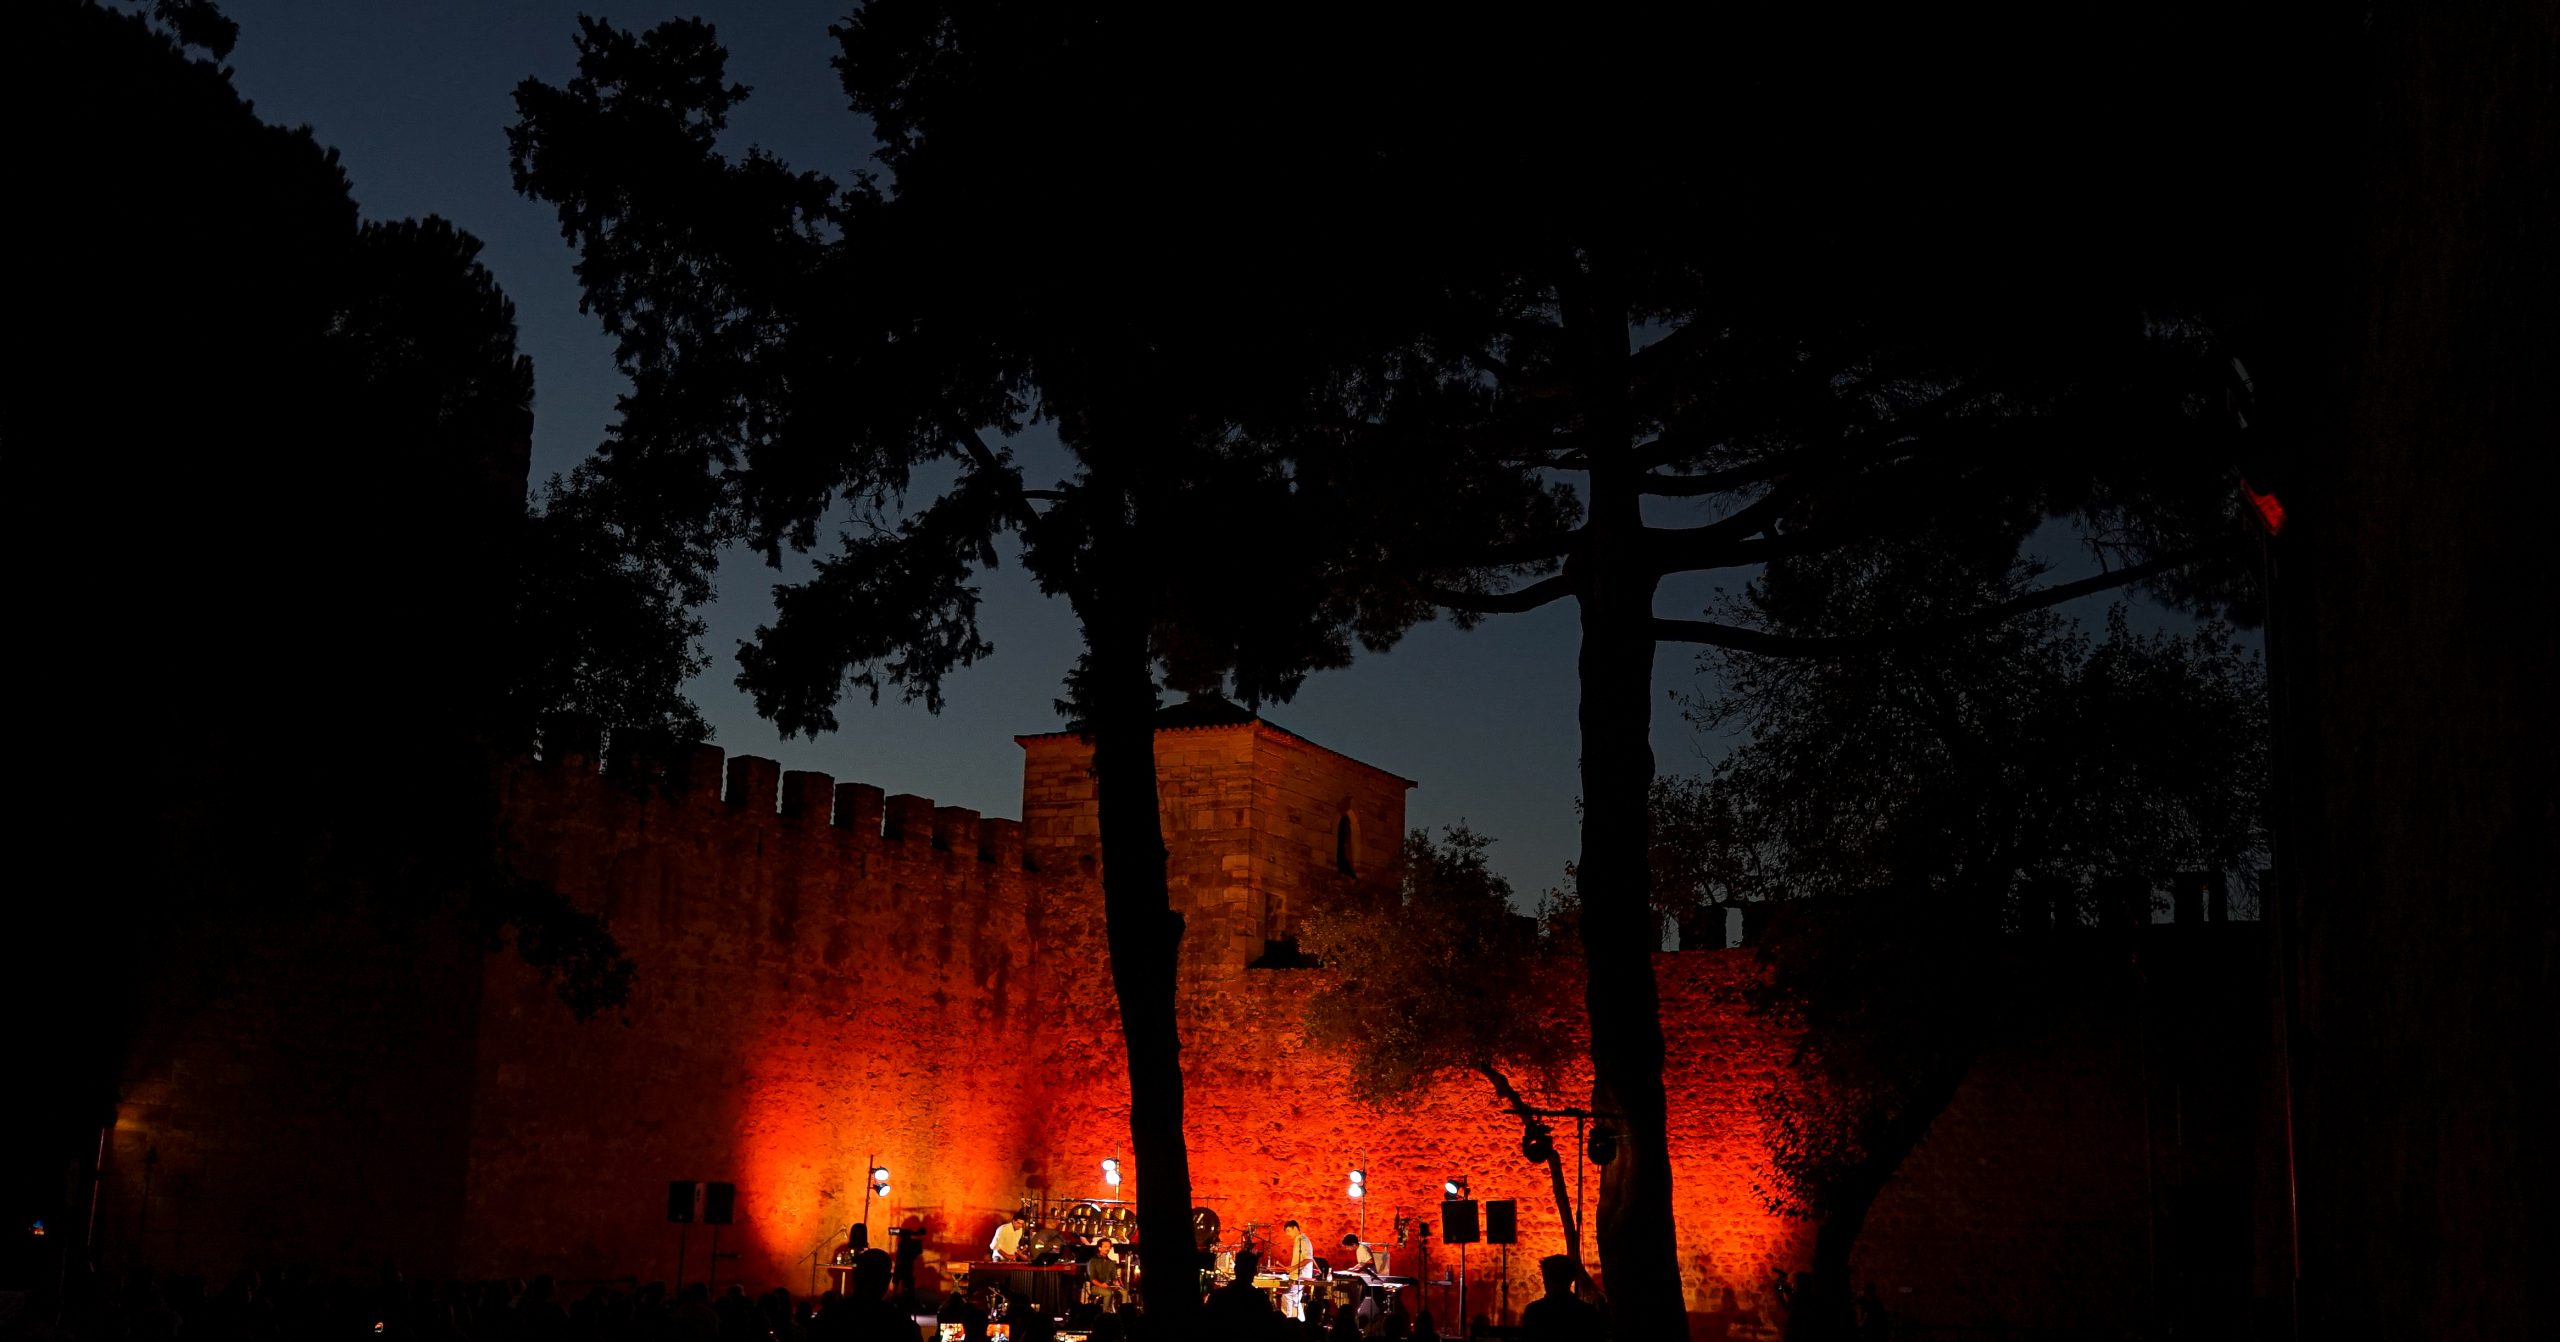 Fotografia noturna. Castelo de São Jorge, Castelejo. Palco com músicos, iluminado com luzes em tons vermelho